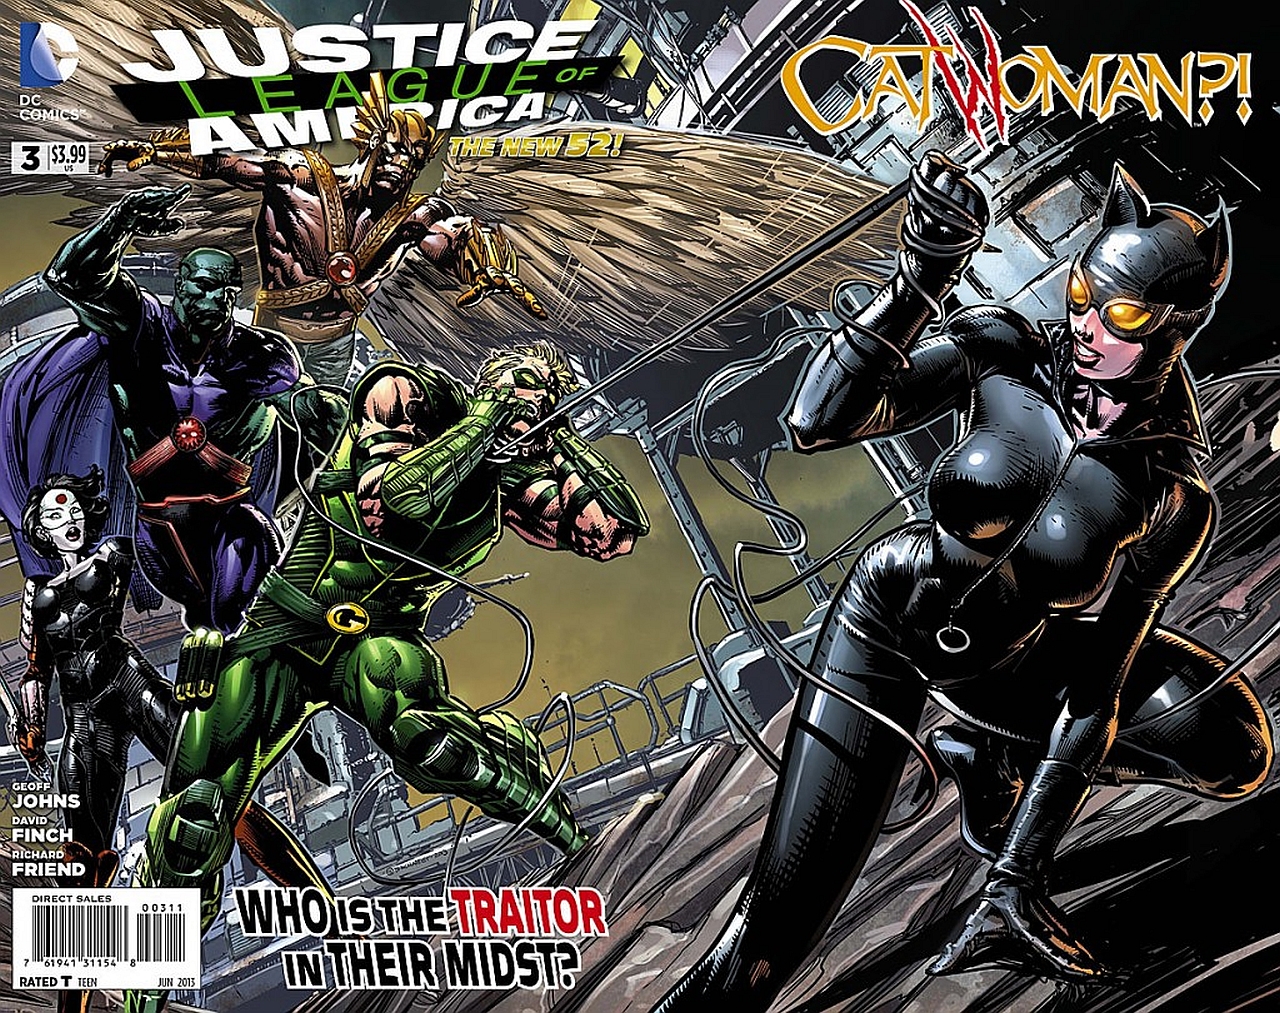 Free HD comics, justice league of america, catwoman, green arrow, hawkman (dc comics), katana (dc comics), martian manhunter, oracle (dc comics)